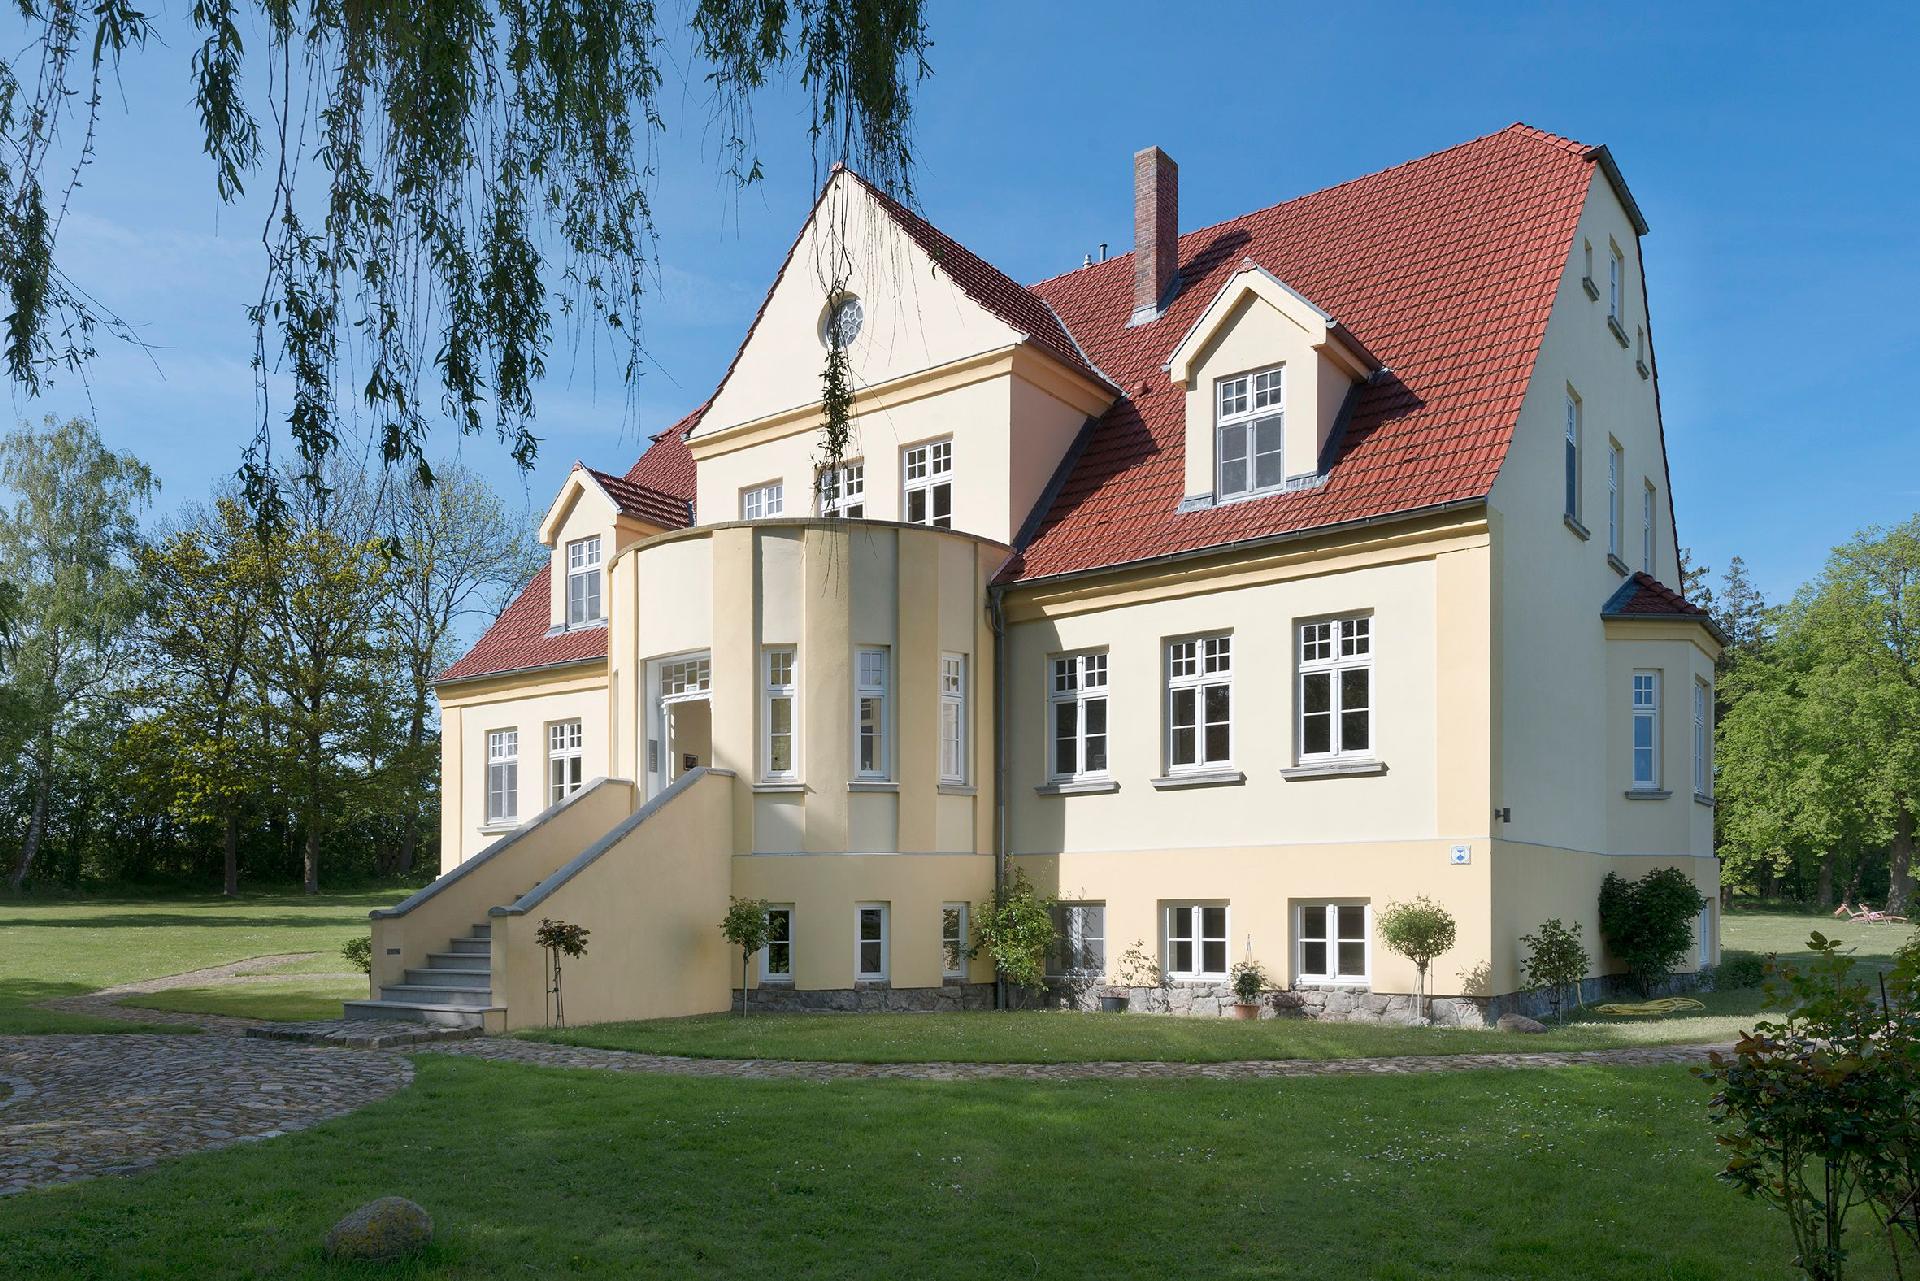 Wohnung in der ersten Etage des Herrenhauses Ferienwohnung in Mecklenburg Vorpommern